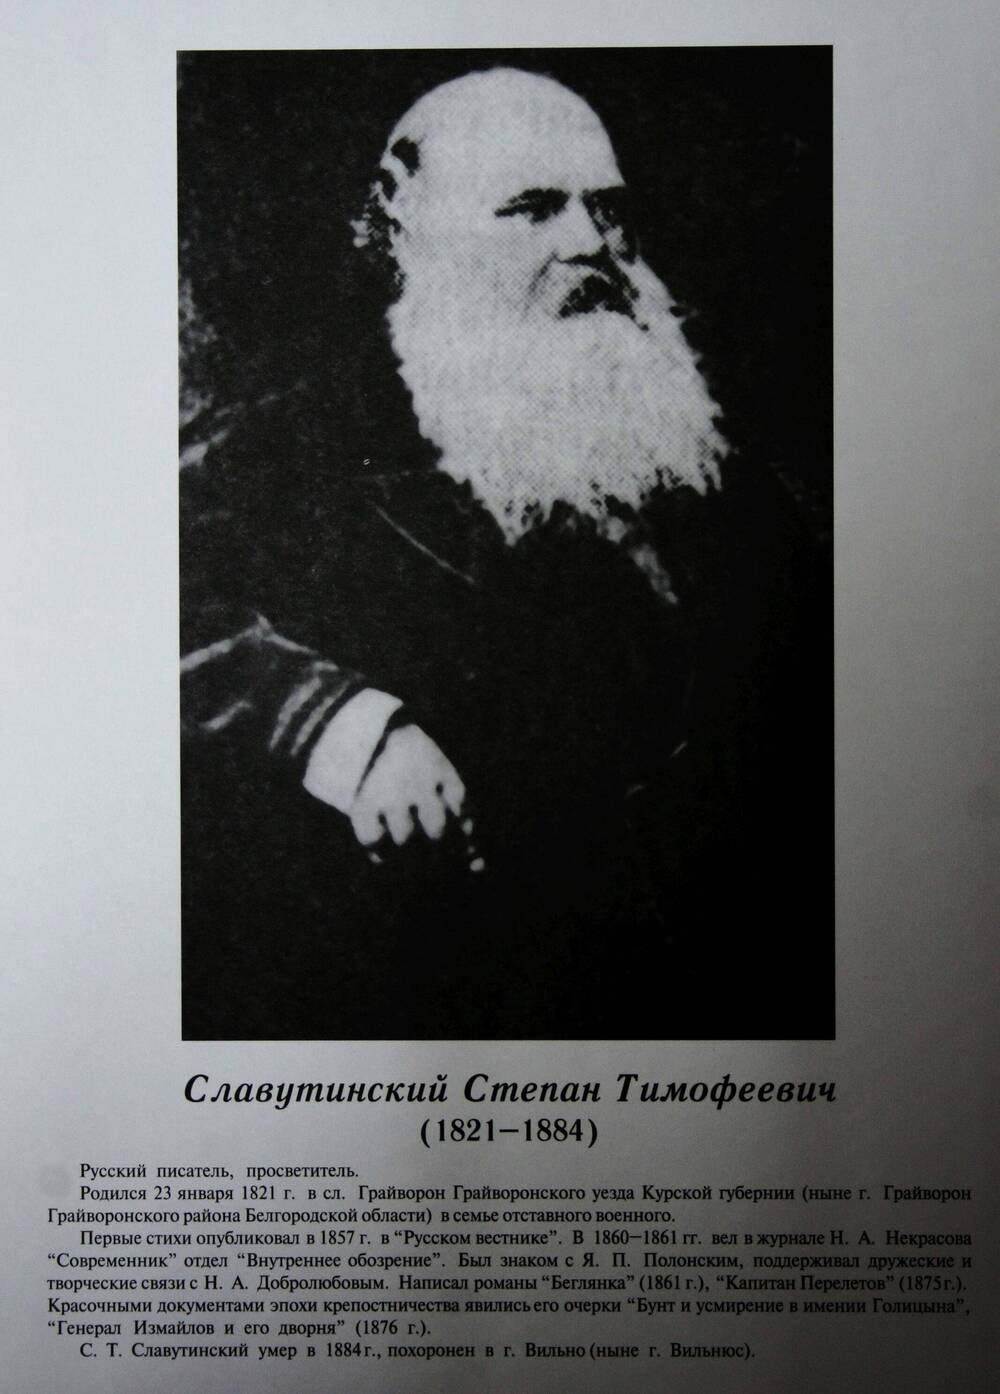 Плакат (фотопортрет) из комплекта Галерея славных имен Белгородчины. Славутинский Степан Тимофеевич (1821-1884).